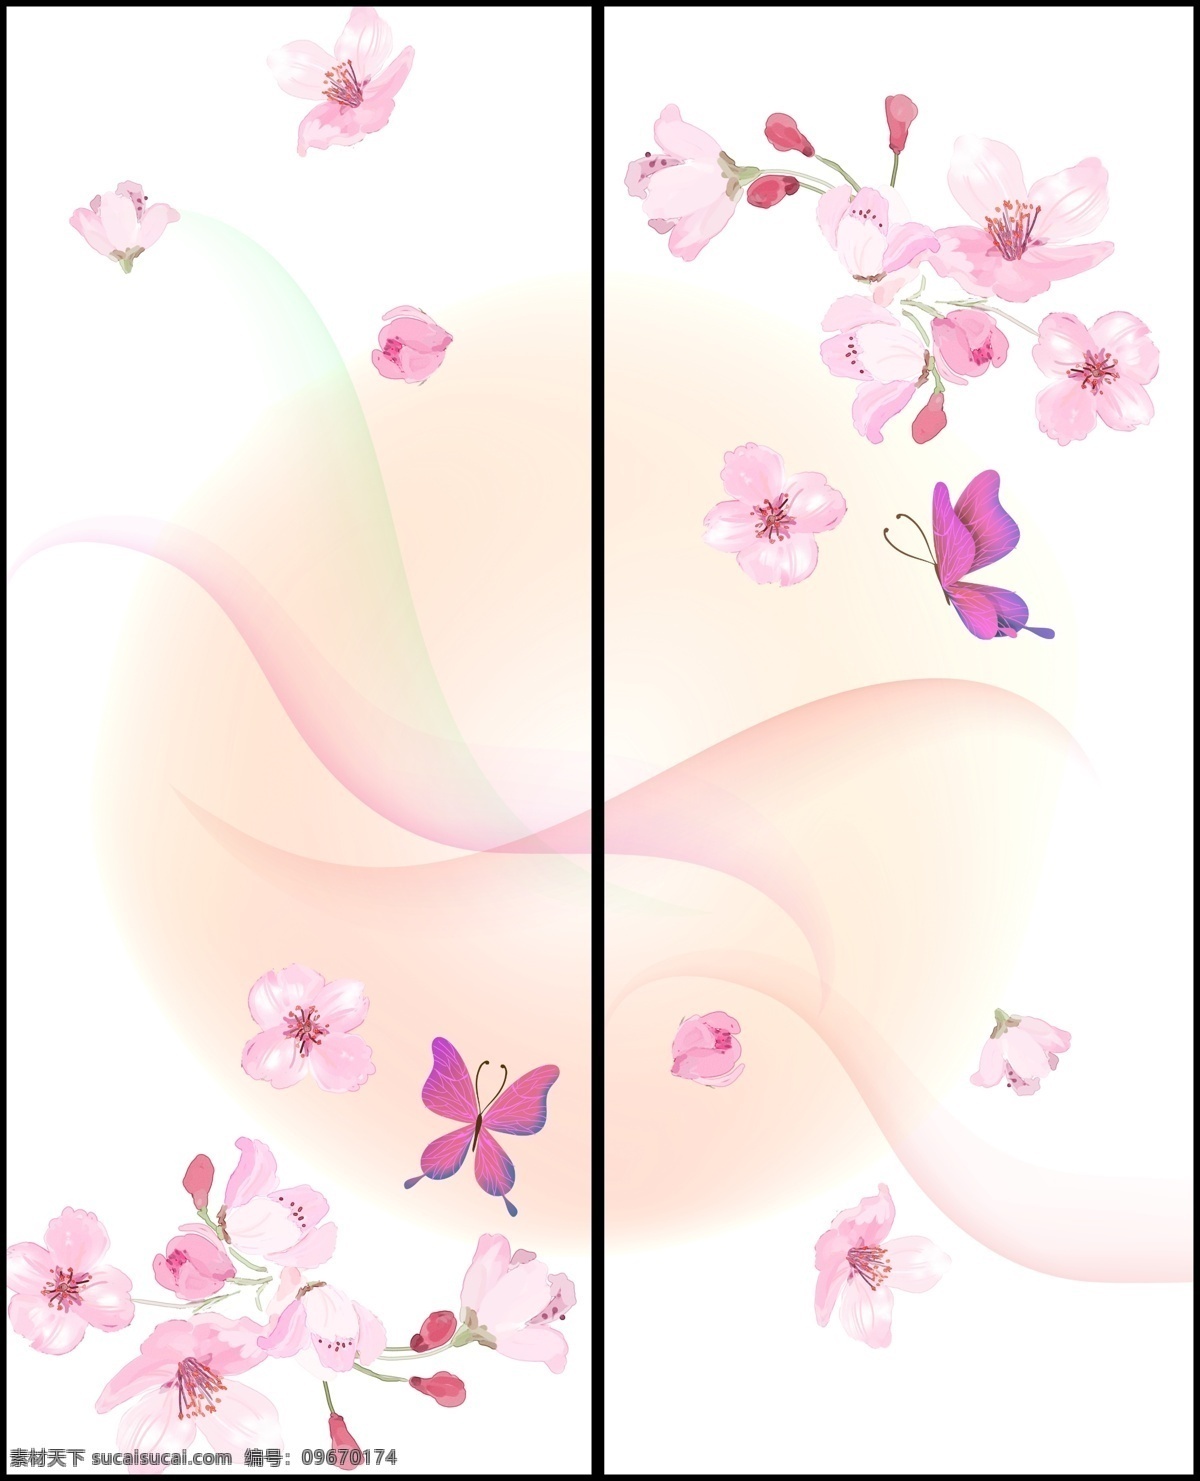 移门 花朵 背景 广告设计模板 蝴蝶 梦幻 曲线 桃花 移门花朵 移门图案 源文件 装饰素材